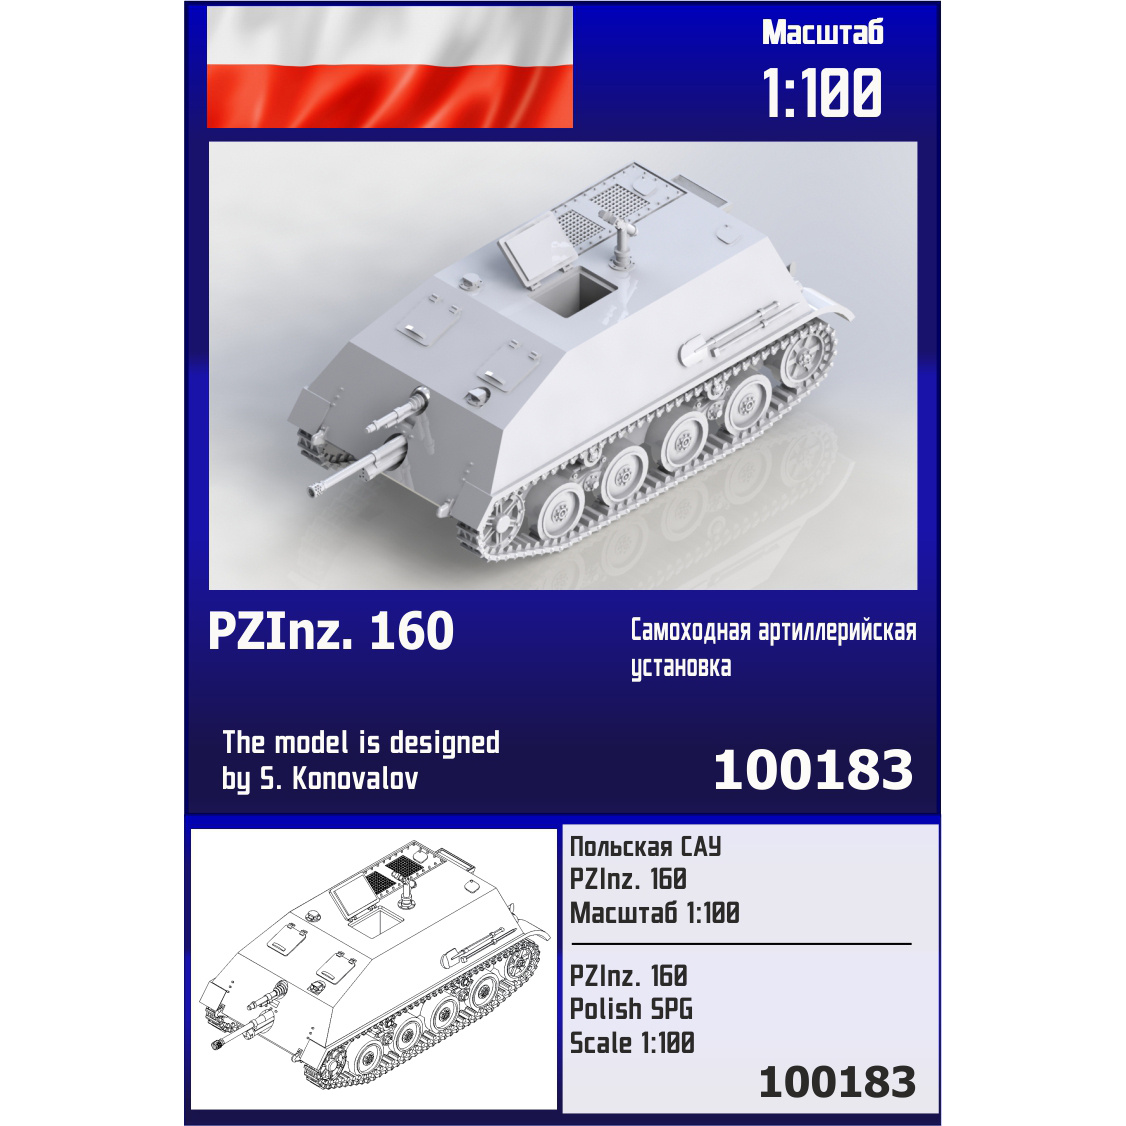 100183  техника и вооружение  Польская САУ PZlnz. 160  (1:100)